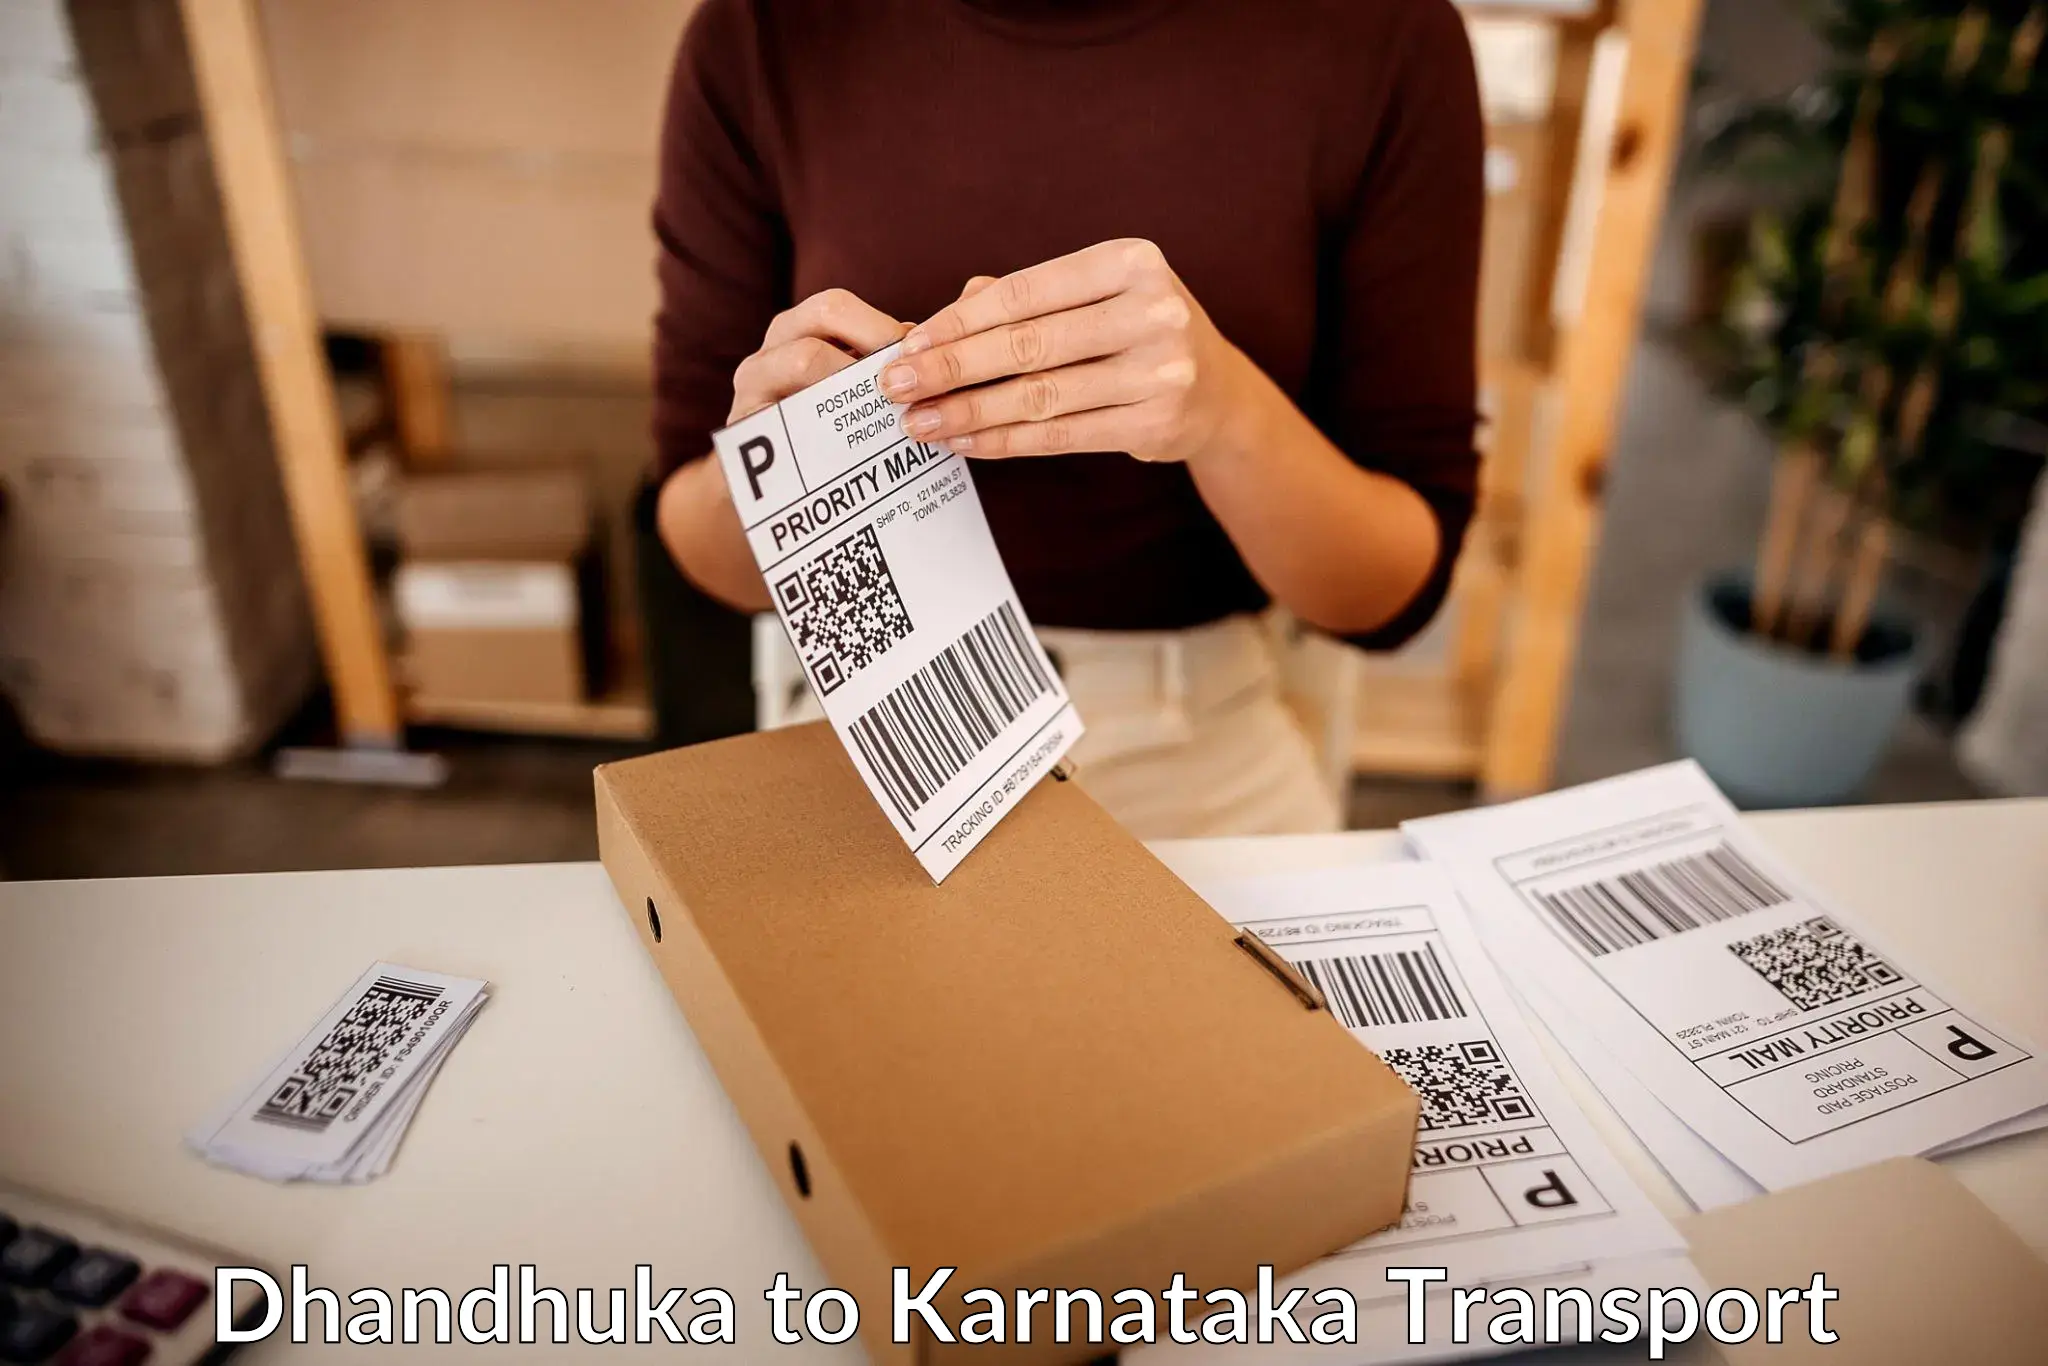 Cargo transport services Dhandhuka to Kanjarakatte